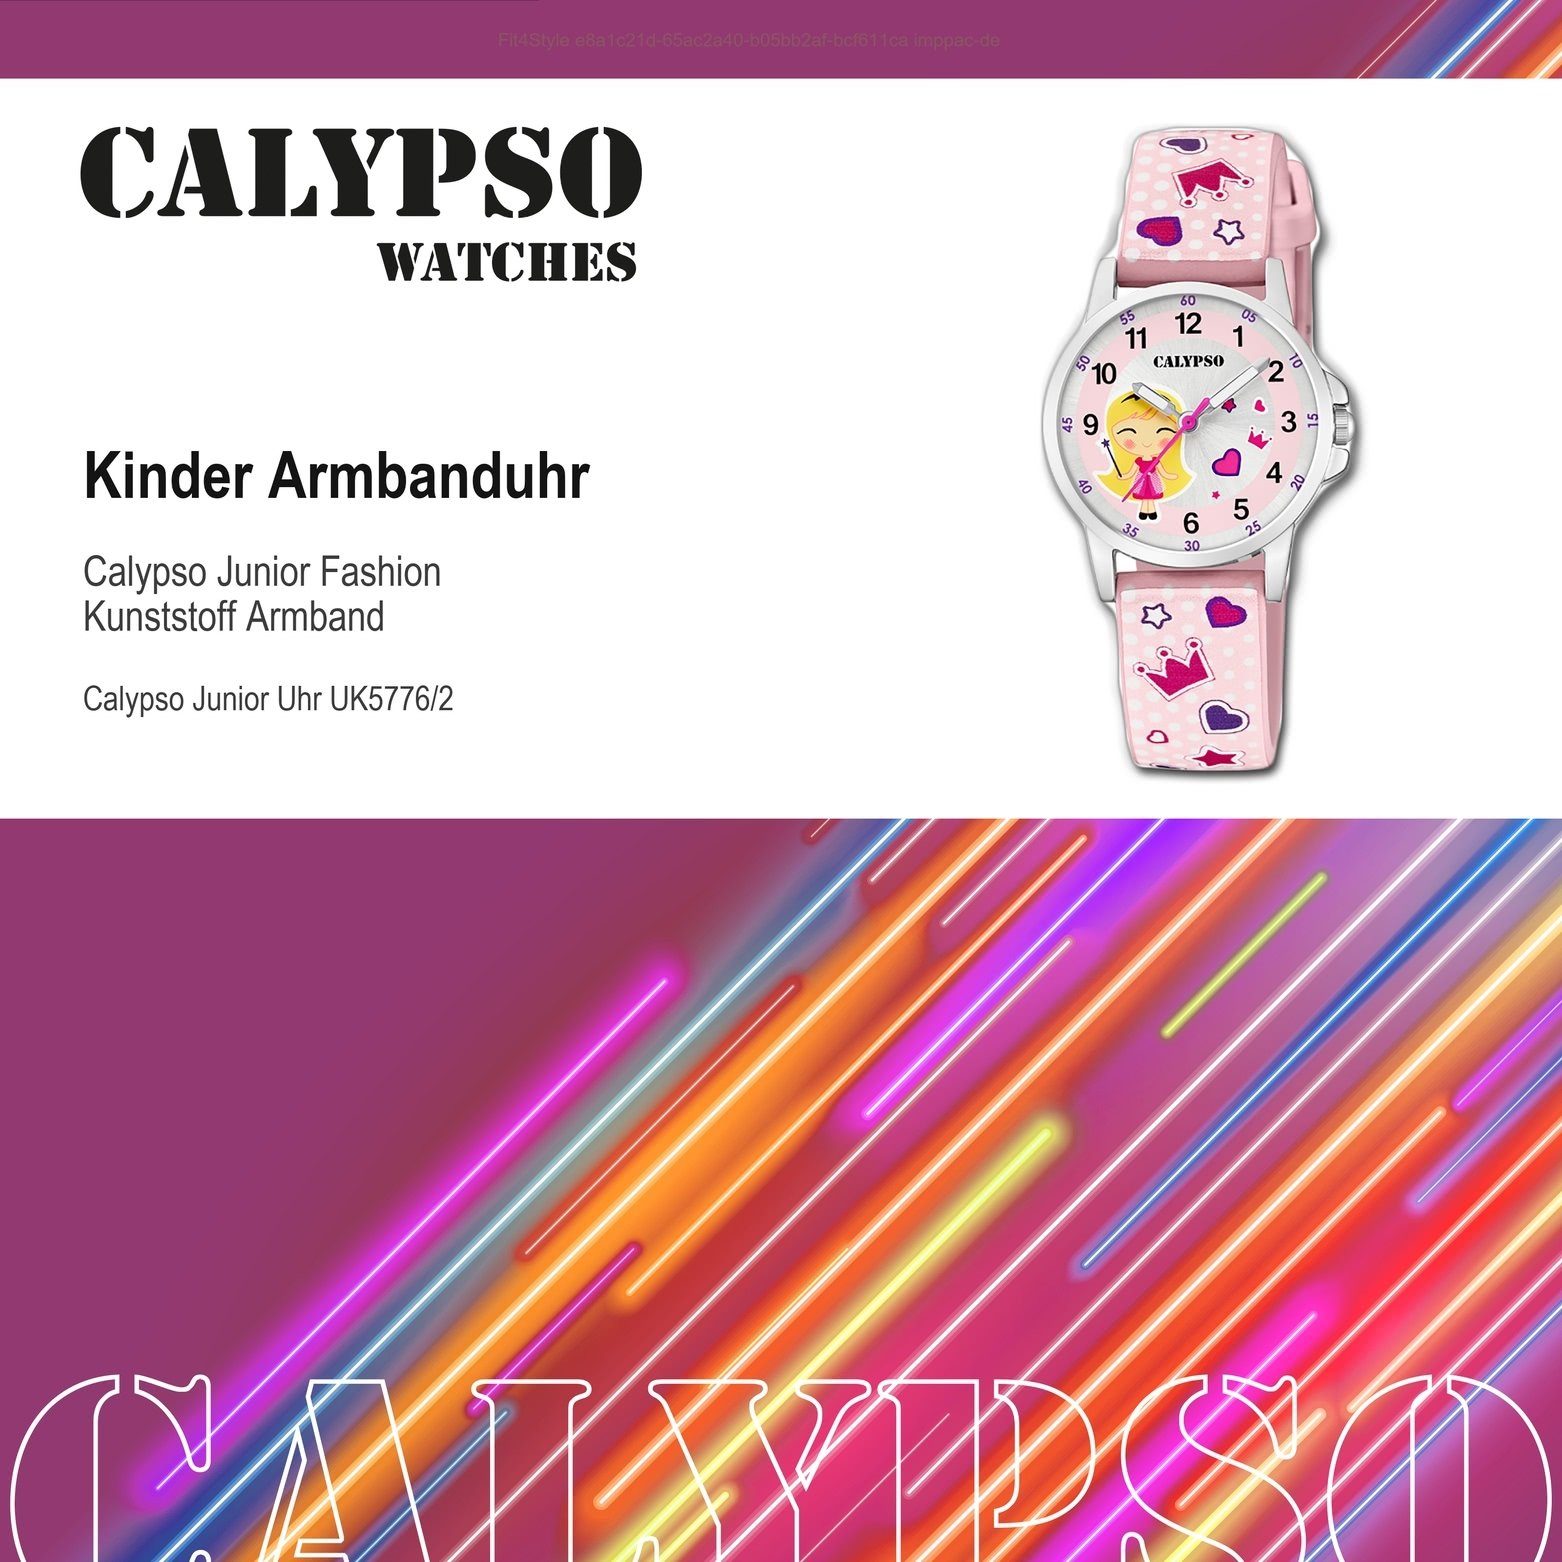 CALYPSO WATCHES Quarzuhr Kunststoff, Fashion Kinder Calypso Armbanduhr rosa, rund, Uhr K5776/2 Kinder PUarmband Kunststoffband